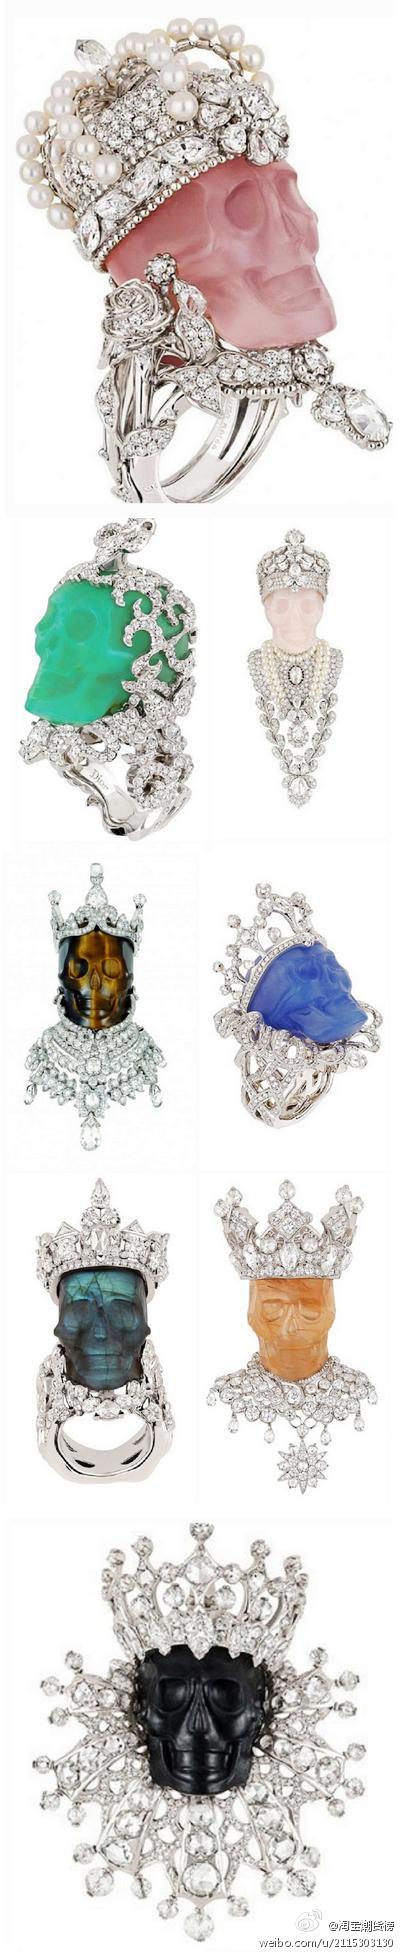 Dior“Reines et Rois” 系列骷髅造型珠宝诠释，每次看都有新惊喜！灵感源自巴洛克时期璀璨、华丽的装饰风格，藉由骷髅意相暗喻珍惜美好时光~